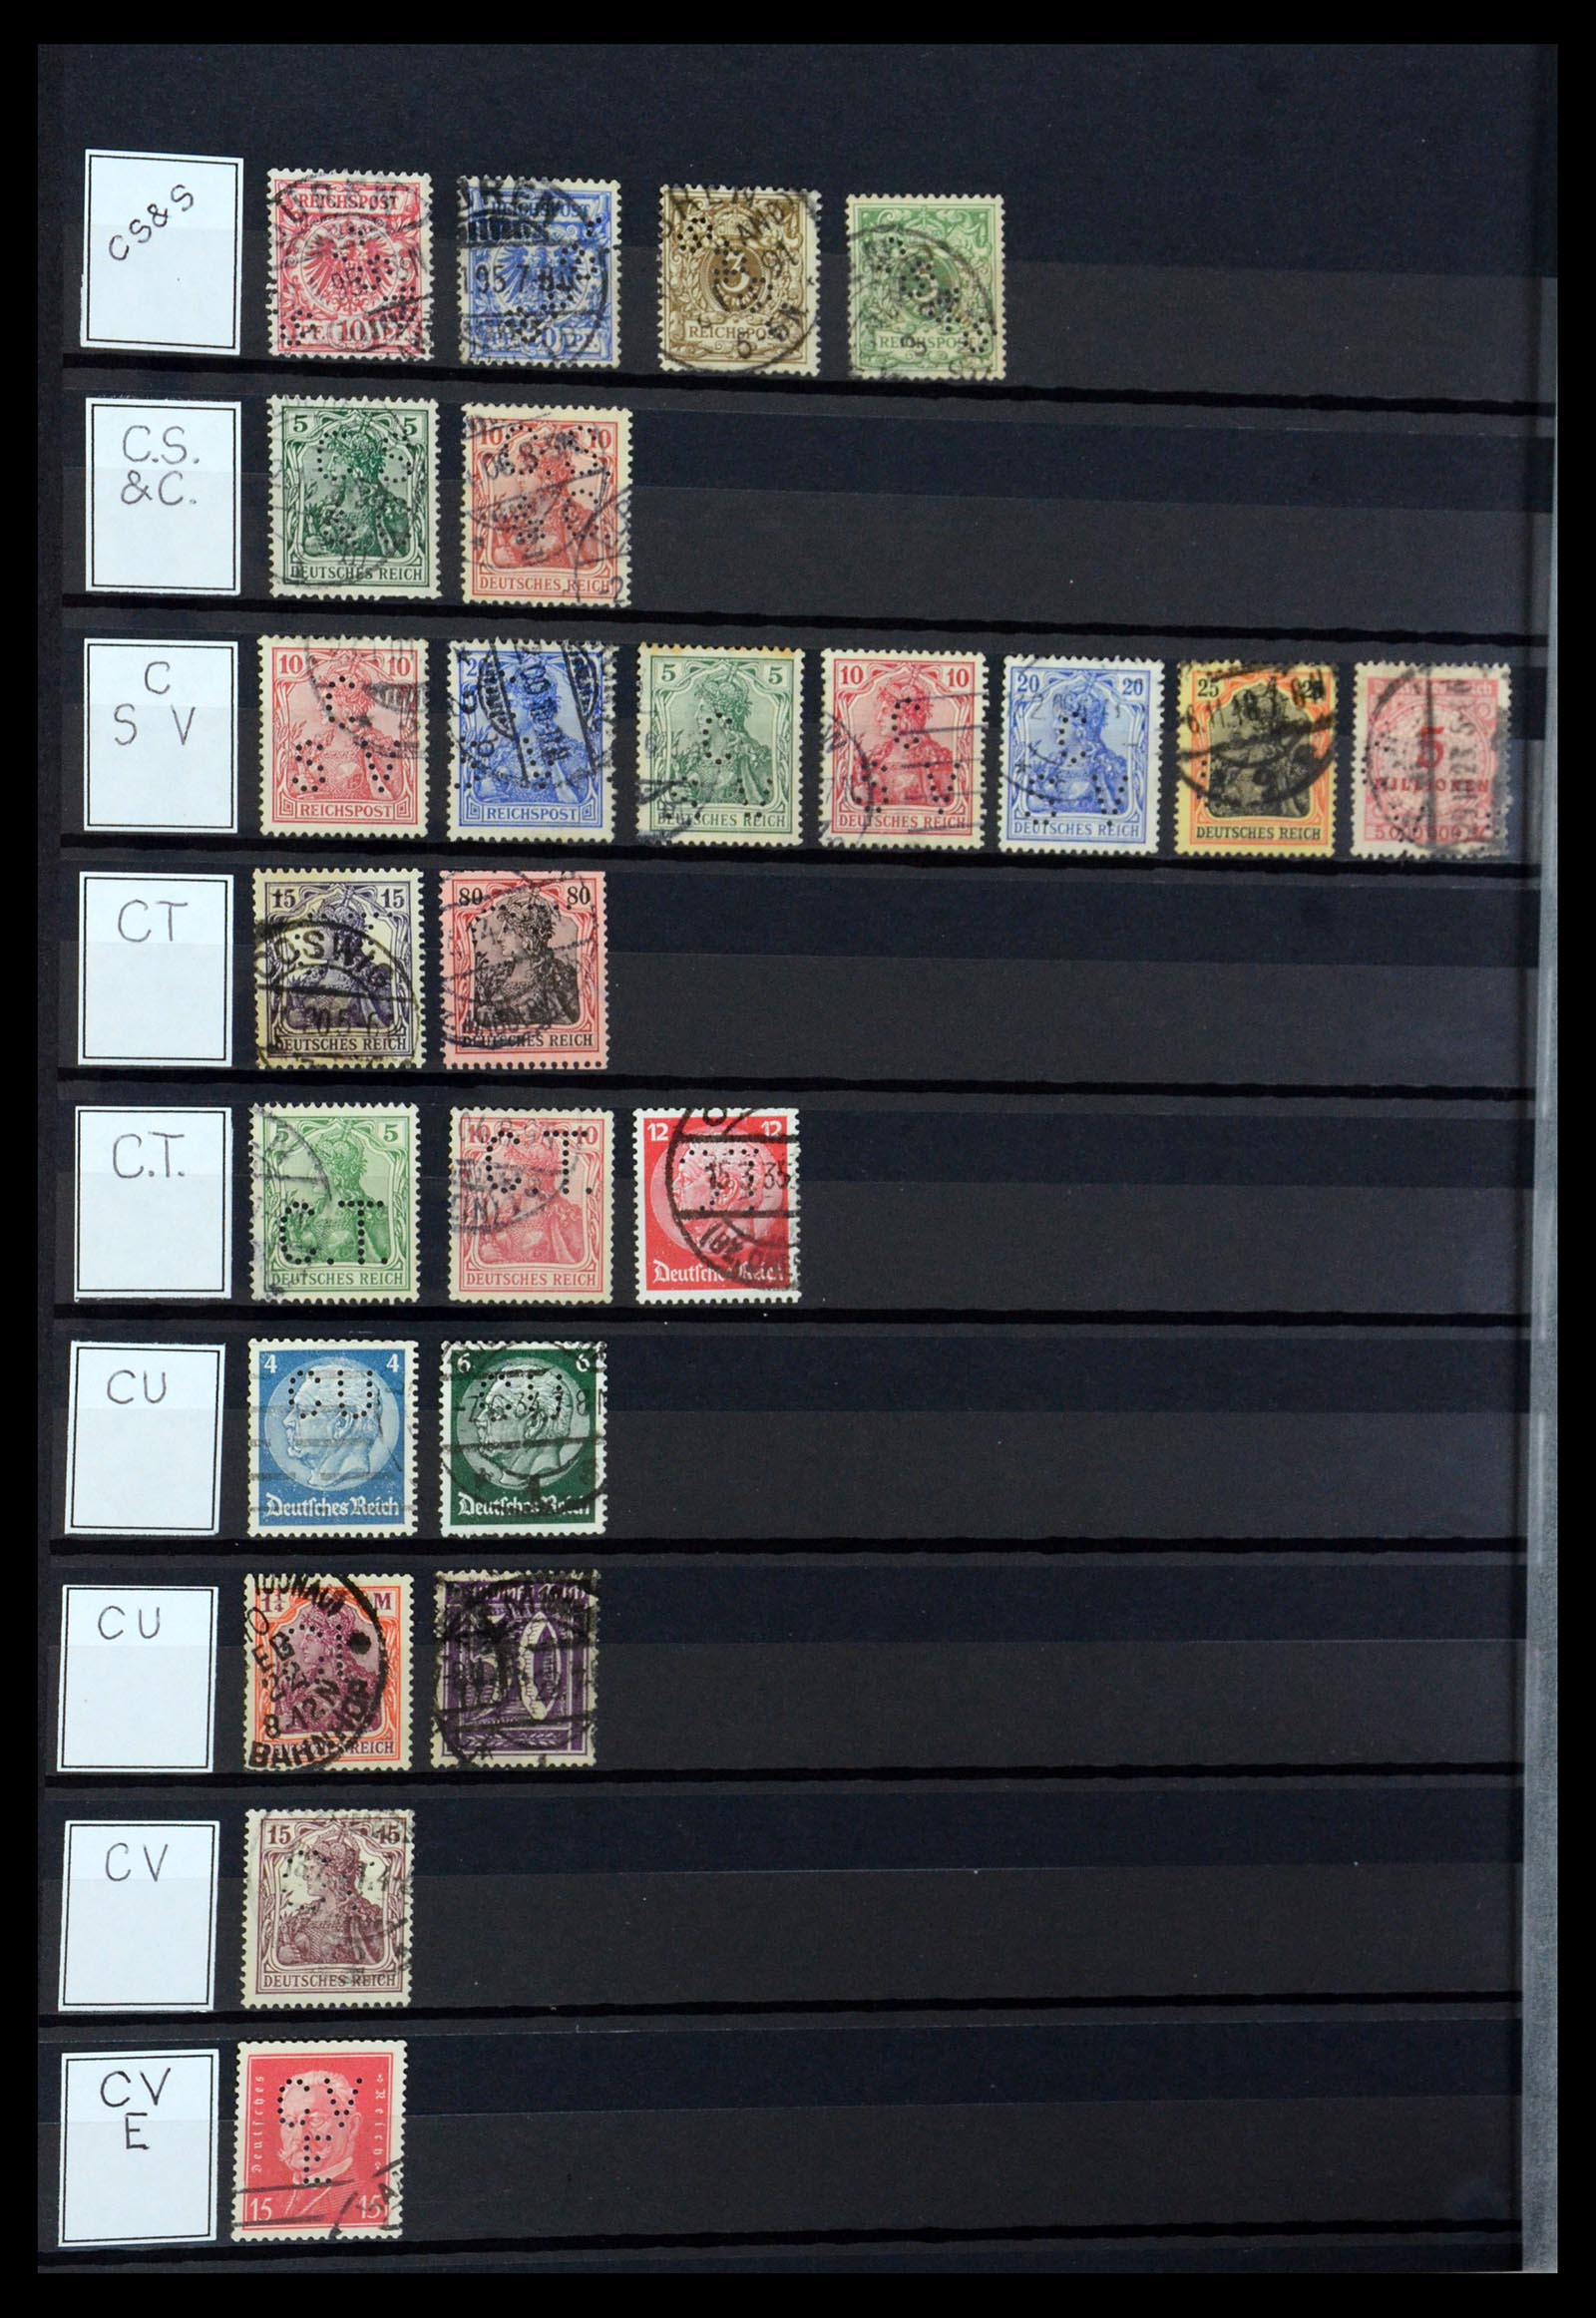 36405 084 - Stamp collection 36405 German Reich perfins 1880-1945.